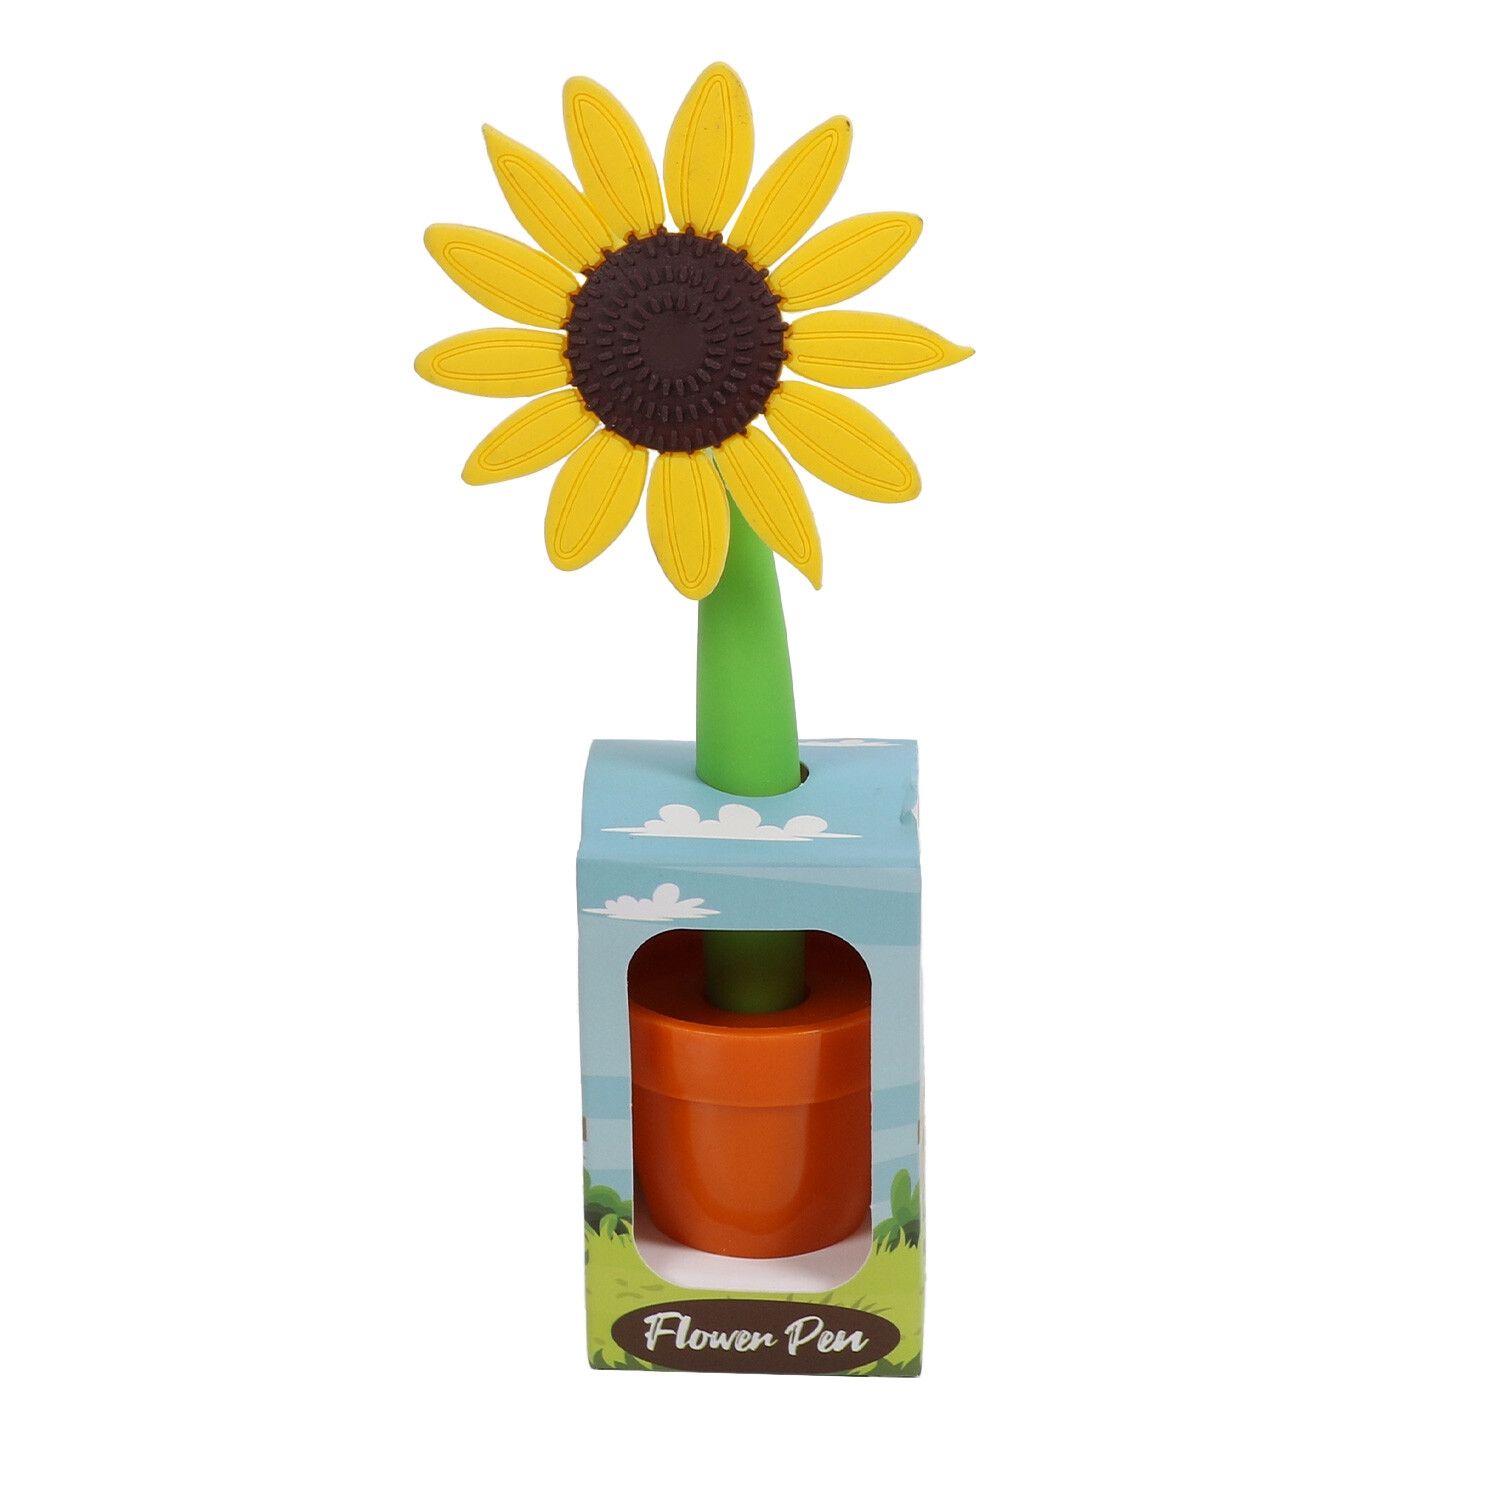 Flower Pen with Plant Pot Image